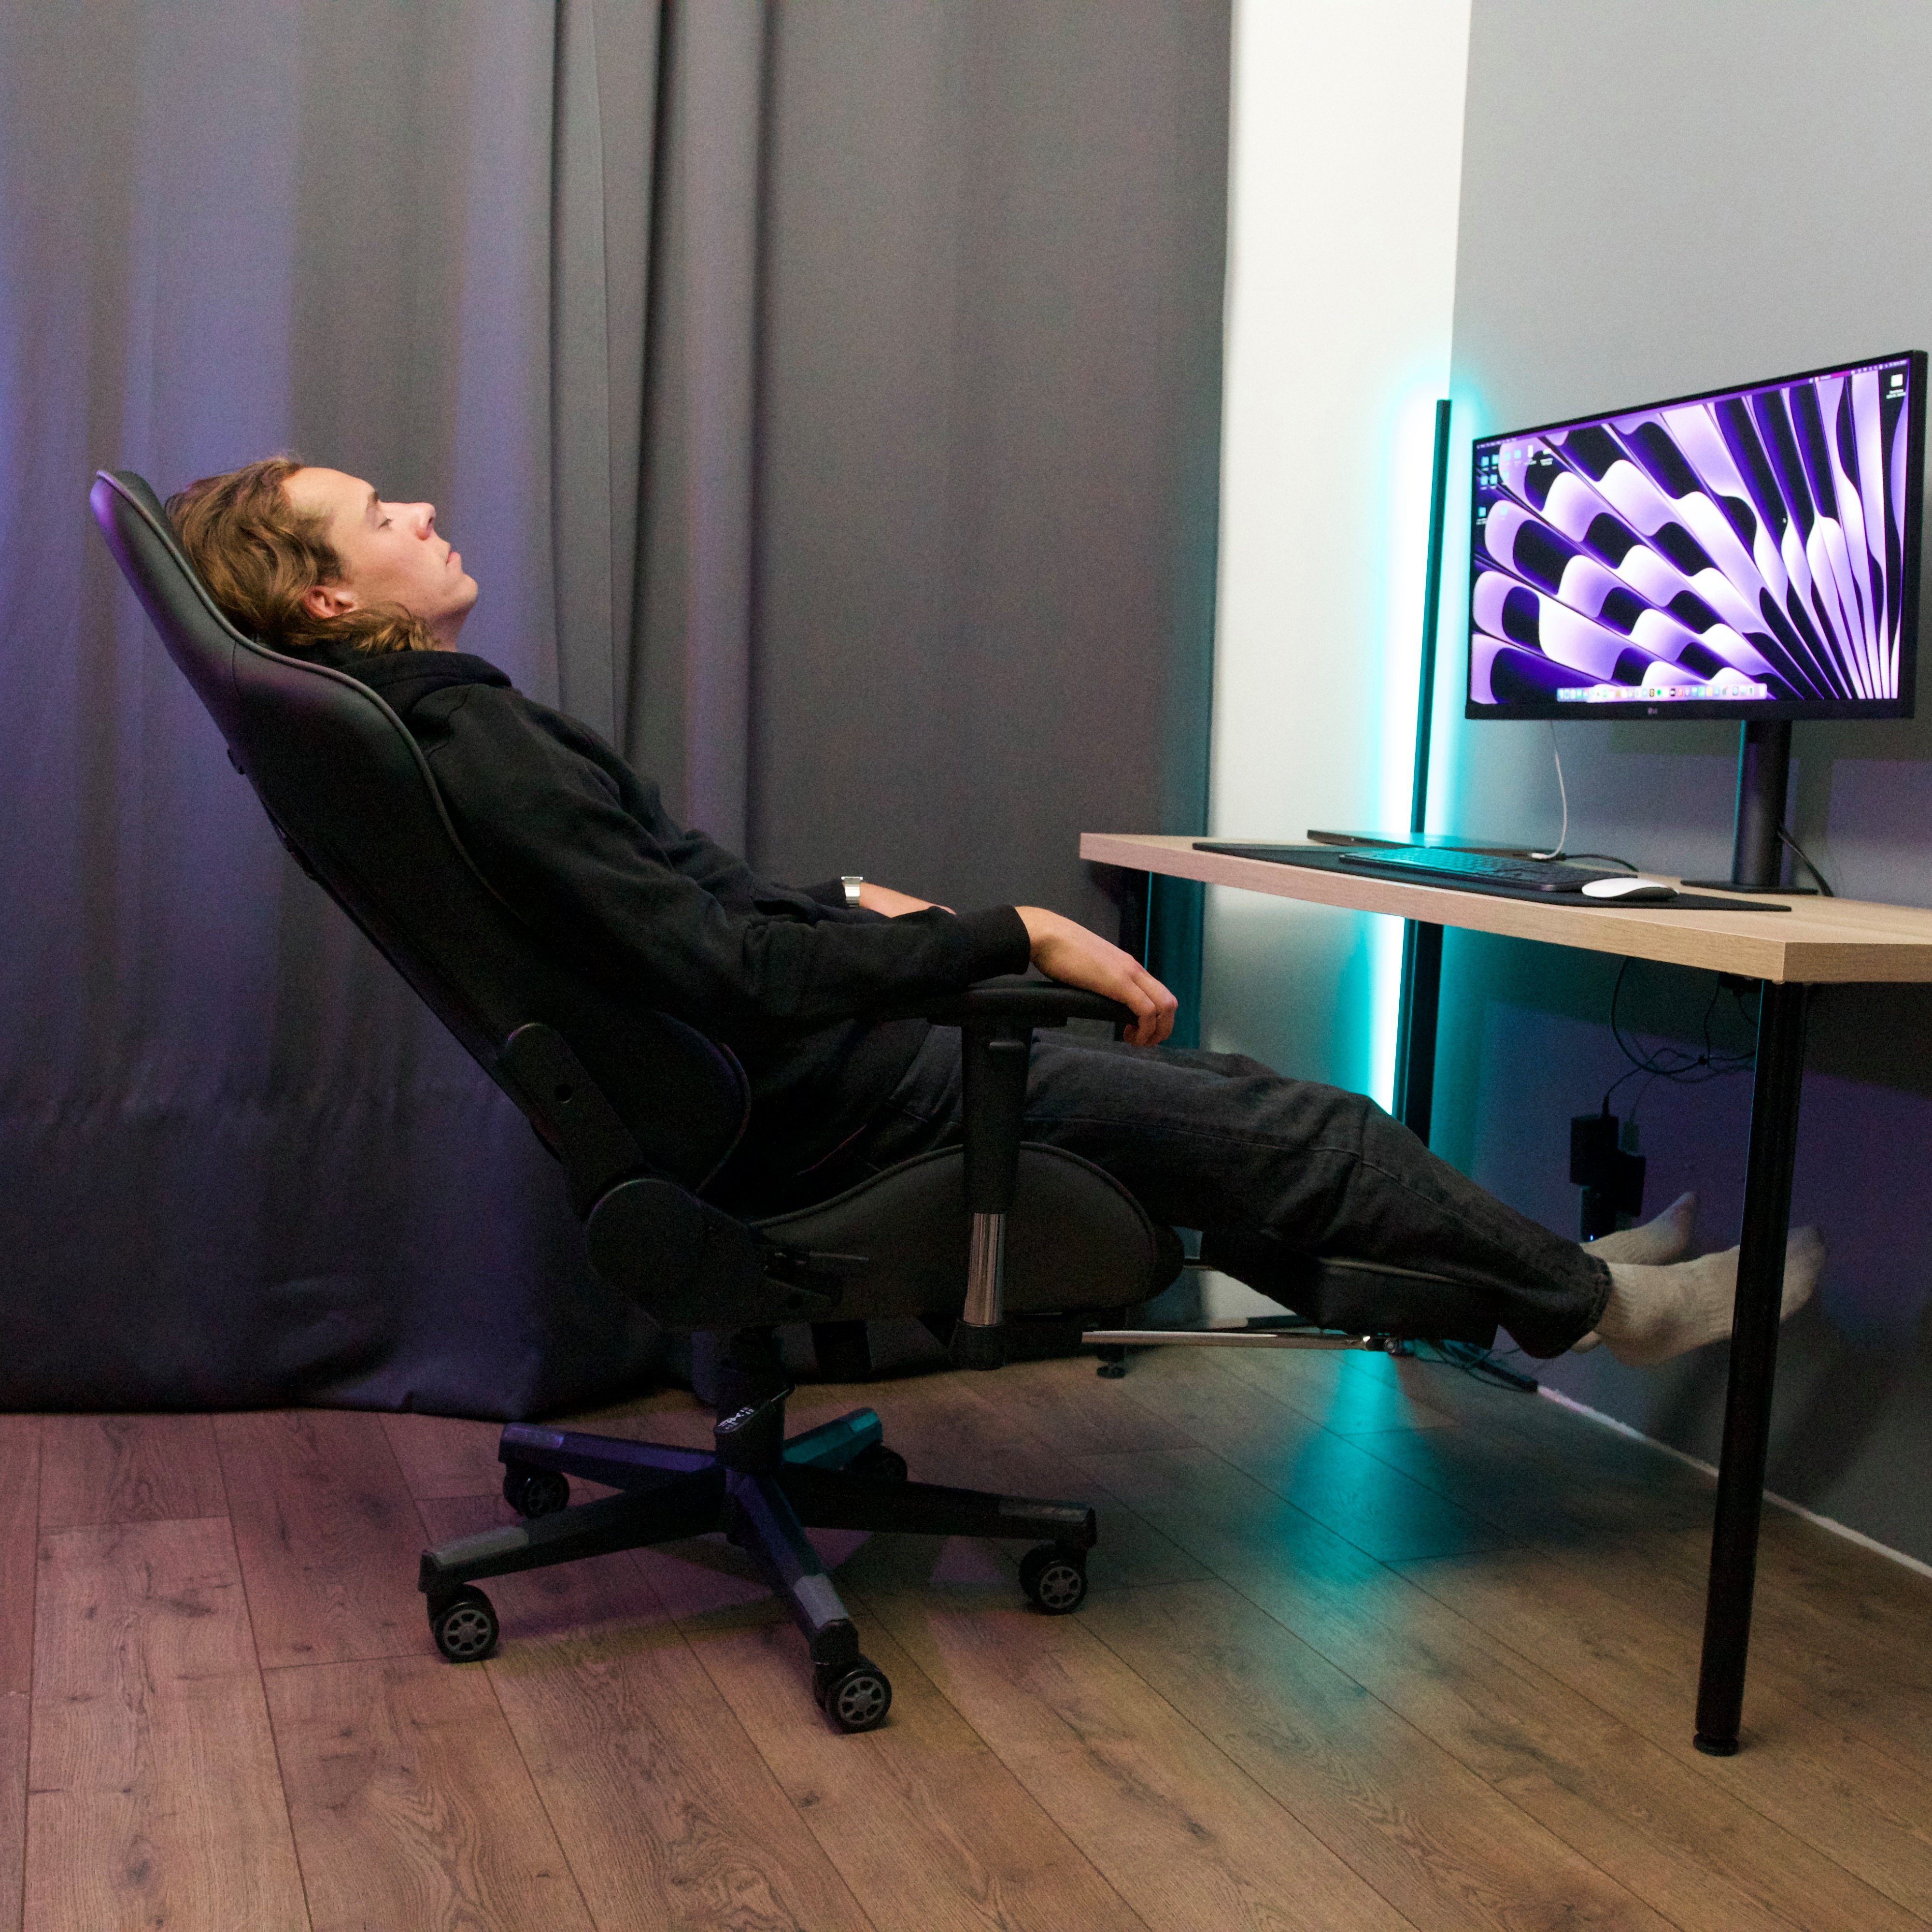 weiß FOXSPORT Ergonomischer Stuhl Gaming-Stuhl mit Gaming Fußstütze